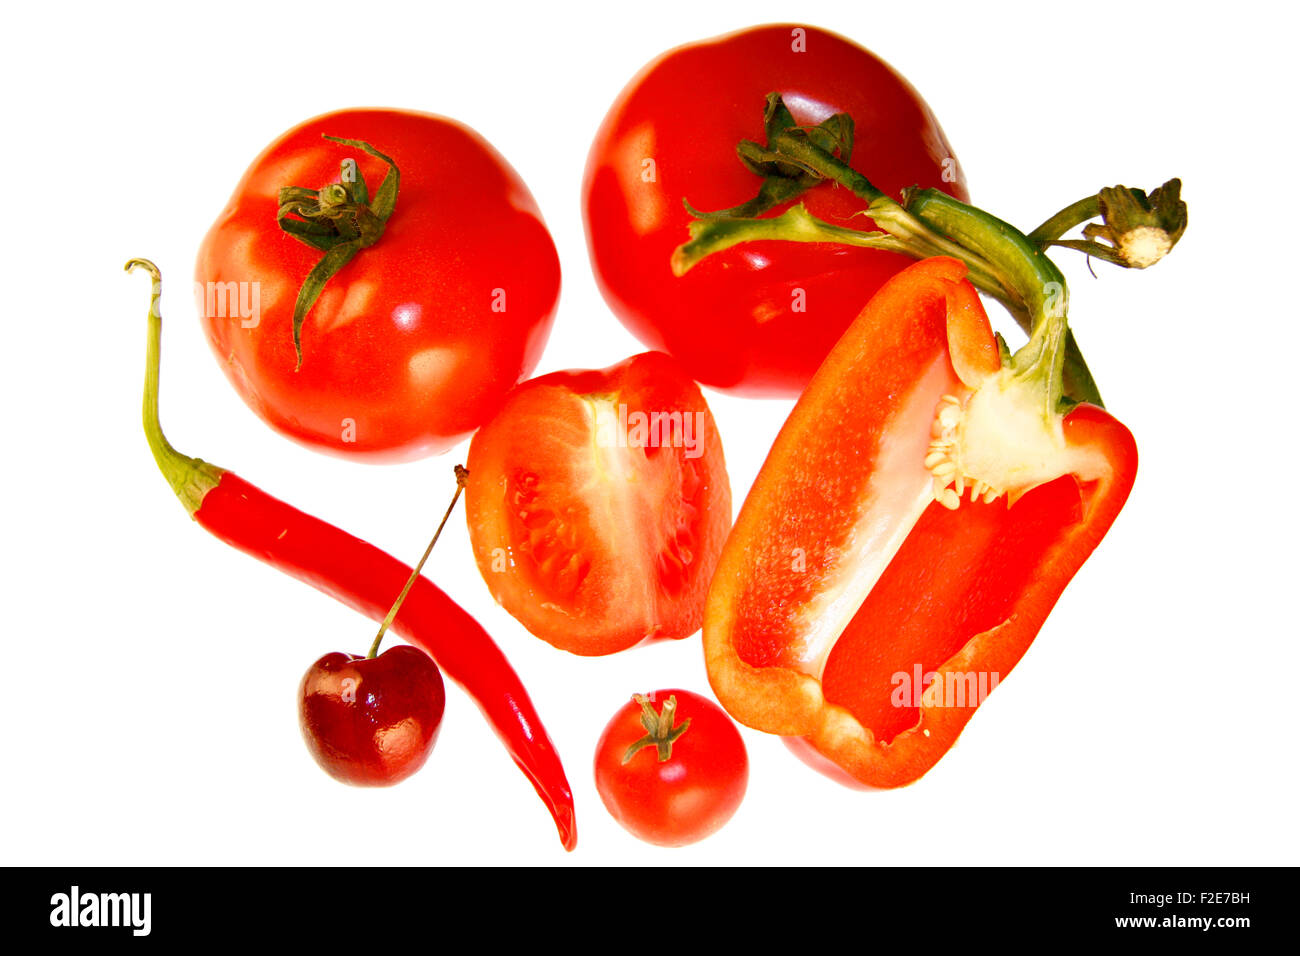 Kirsche, Chilly-Schote, Tomaten, Paprika-Schote - Symbolbild Nahrungsmittel . Stock Photo